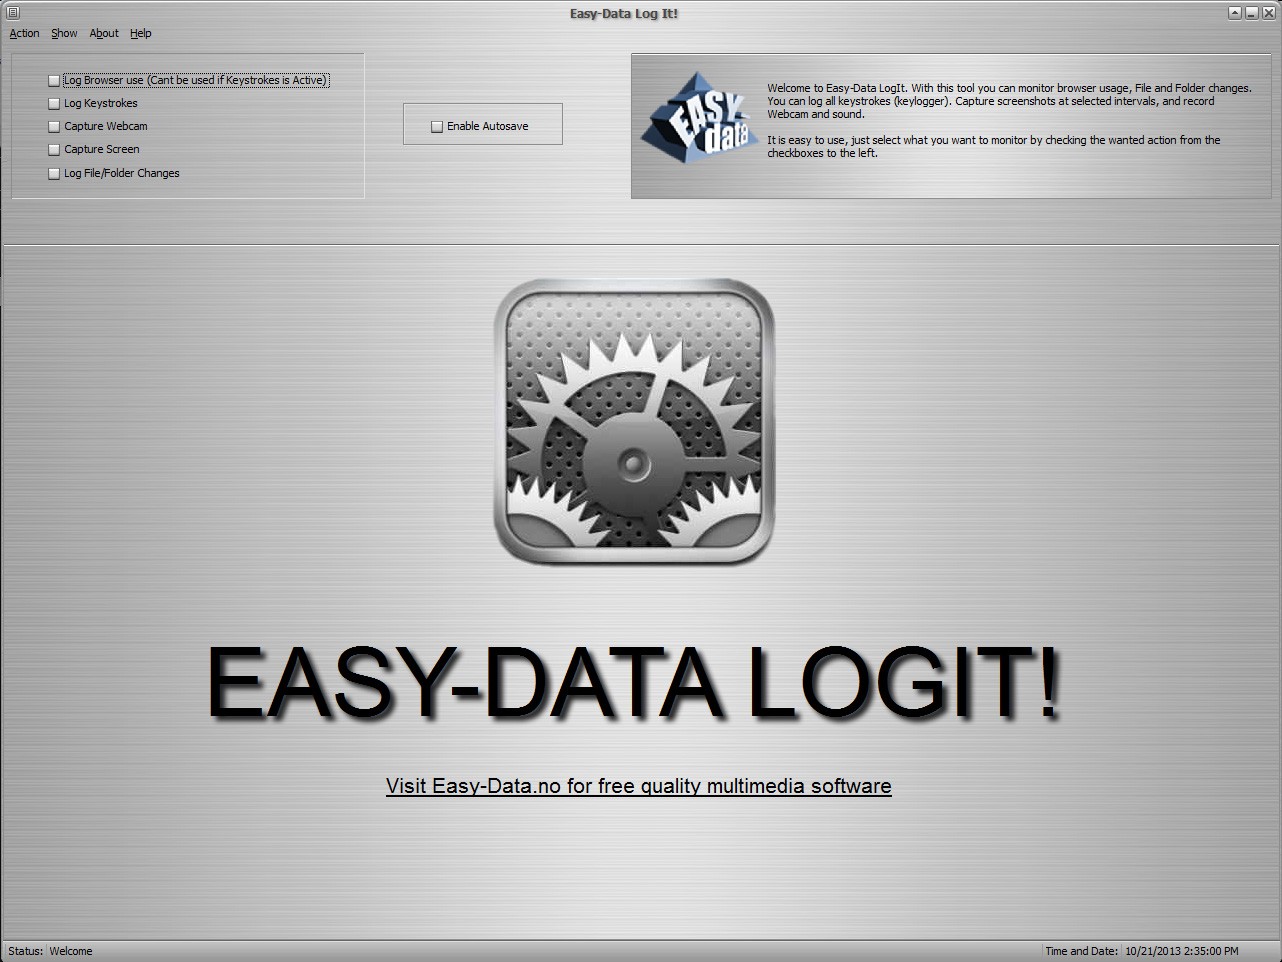 Easy-Data LogIt 1.0